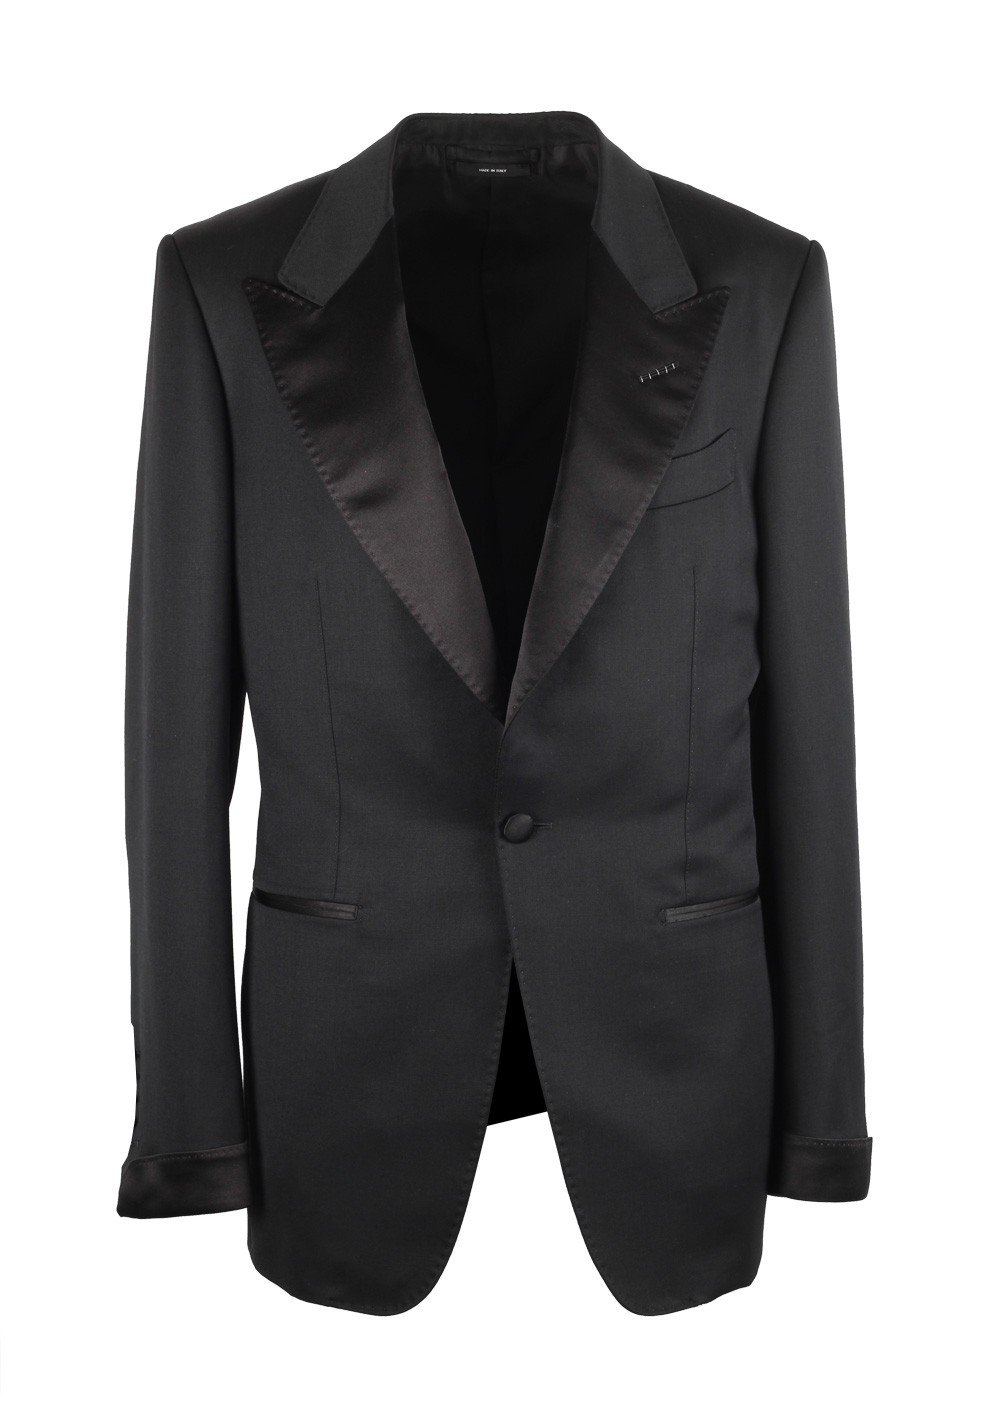 TOM FORD Shelton Black Tuxedo Dinner Suit Size 60 / 50R U.S. | Costume ...